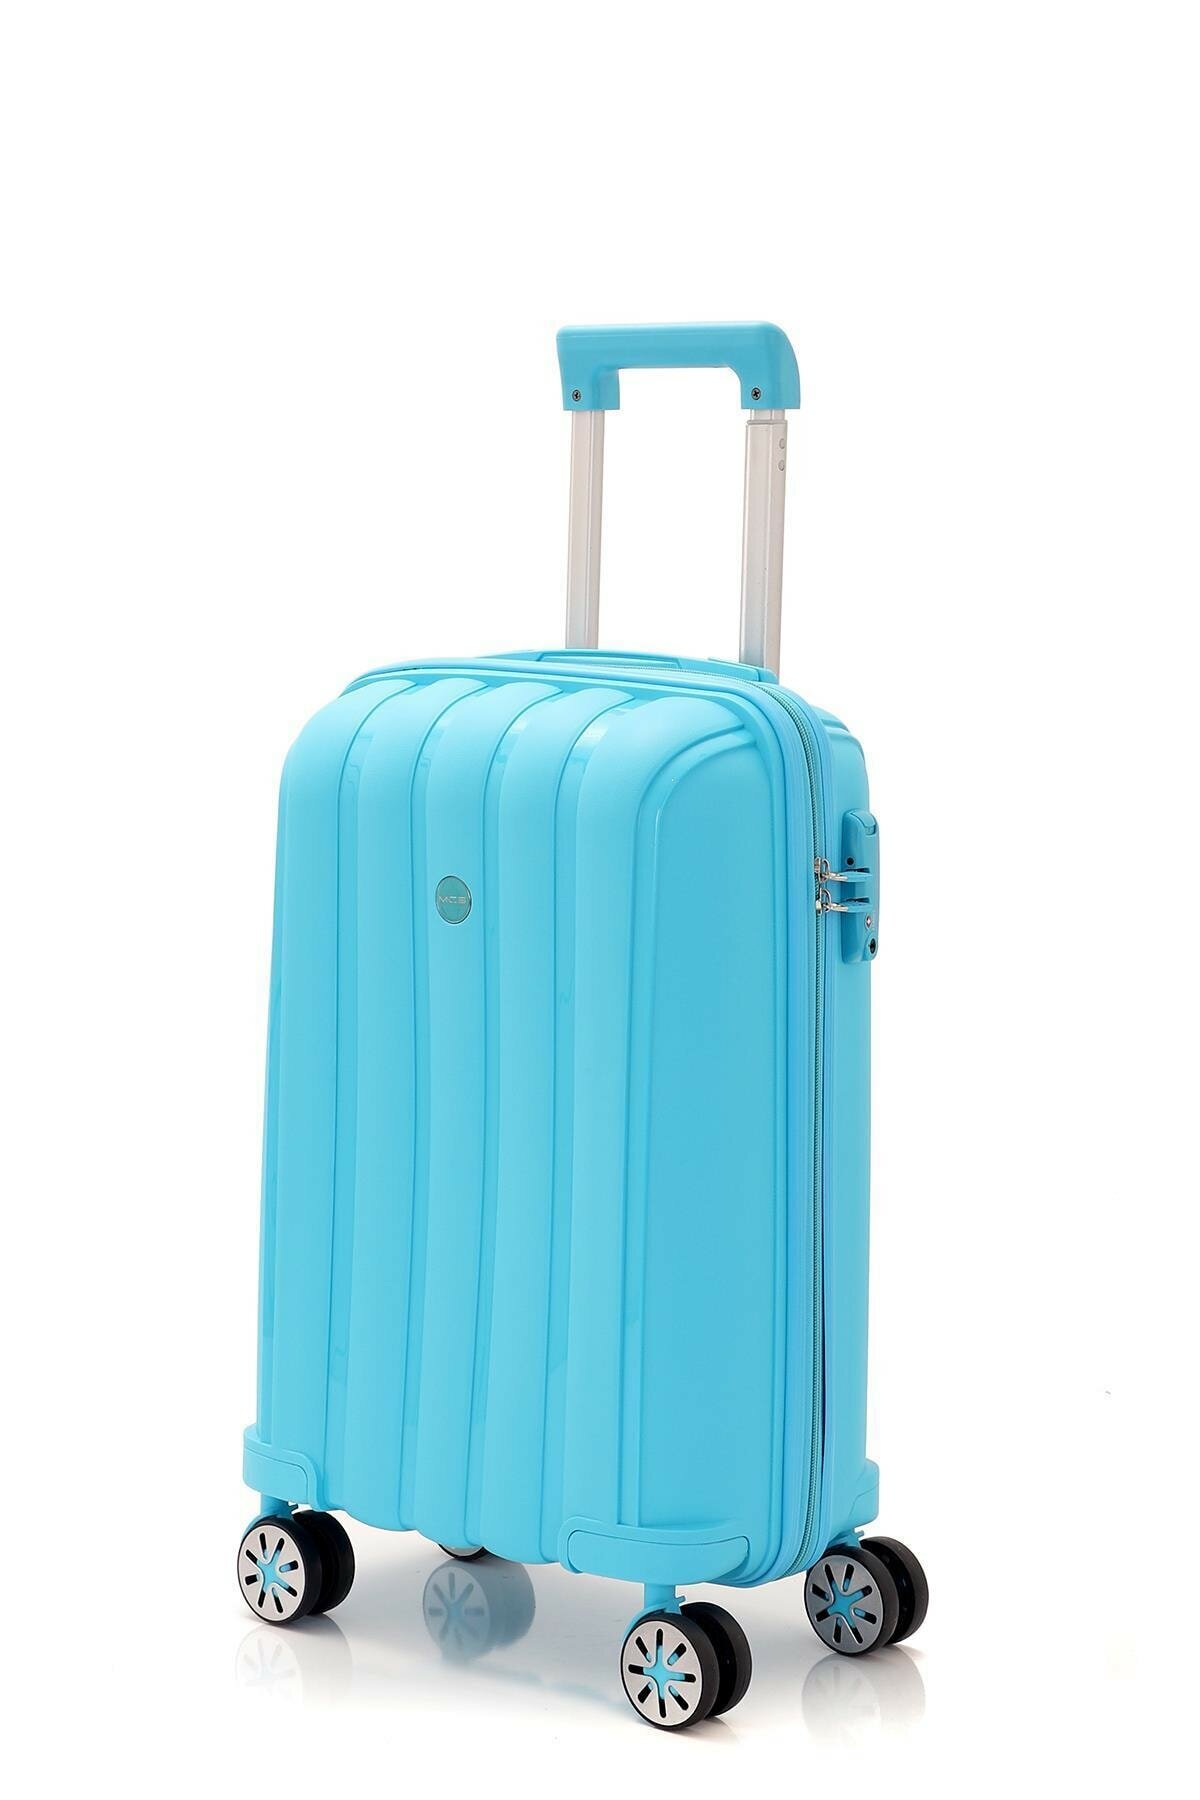 Маленький чемодан для ручьной клади из полипропилена MCS V305 S L.BLUE! Для 8-10 кг! - 5